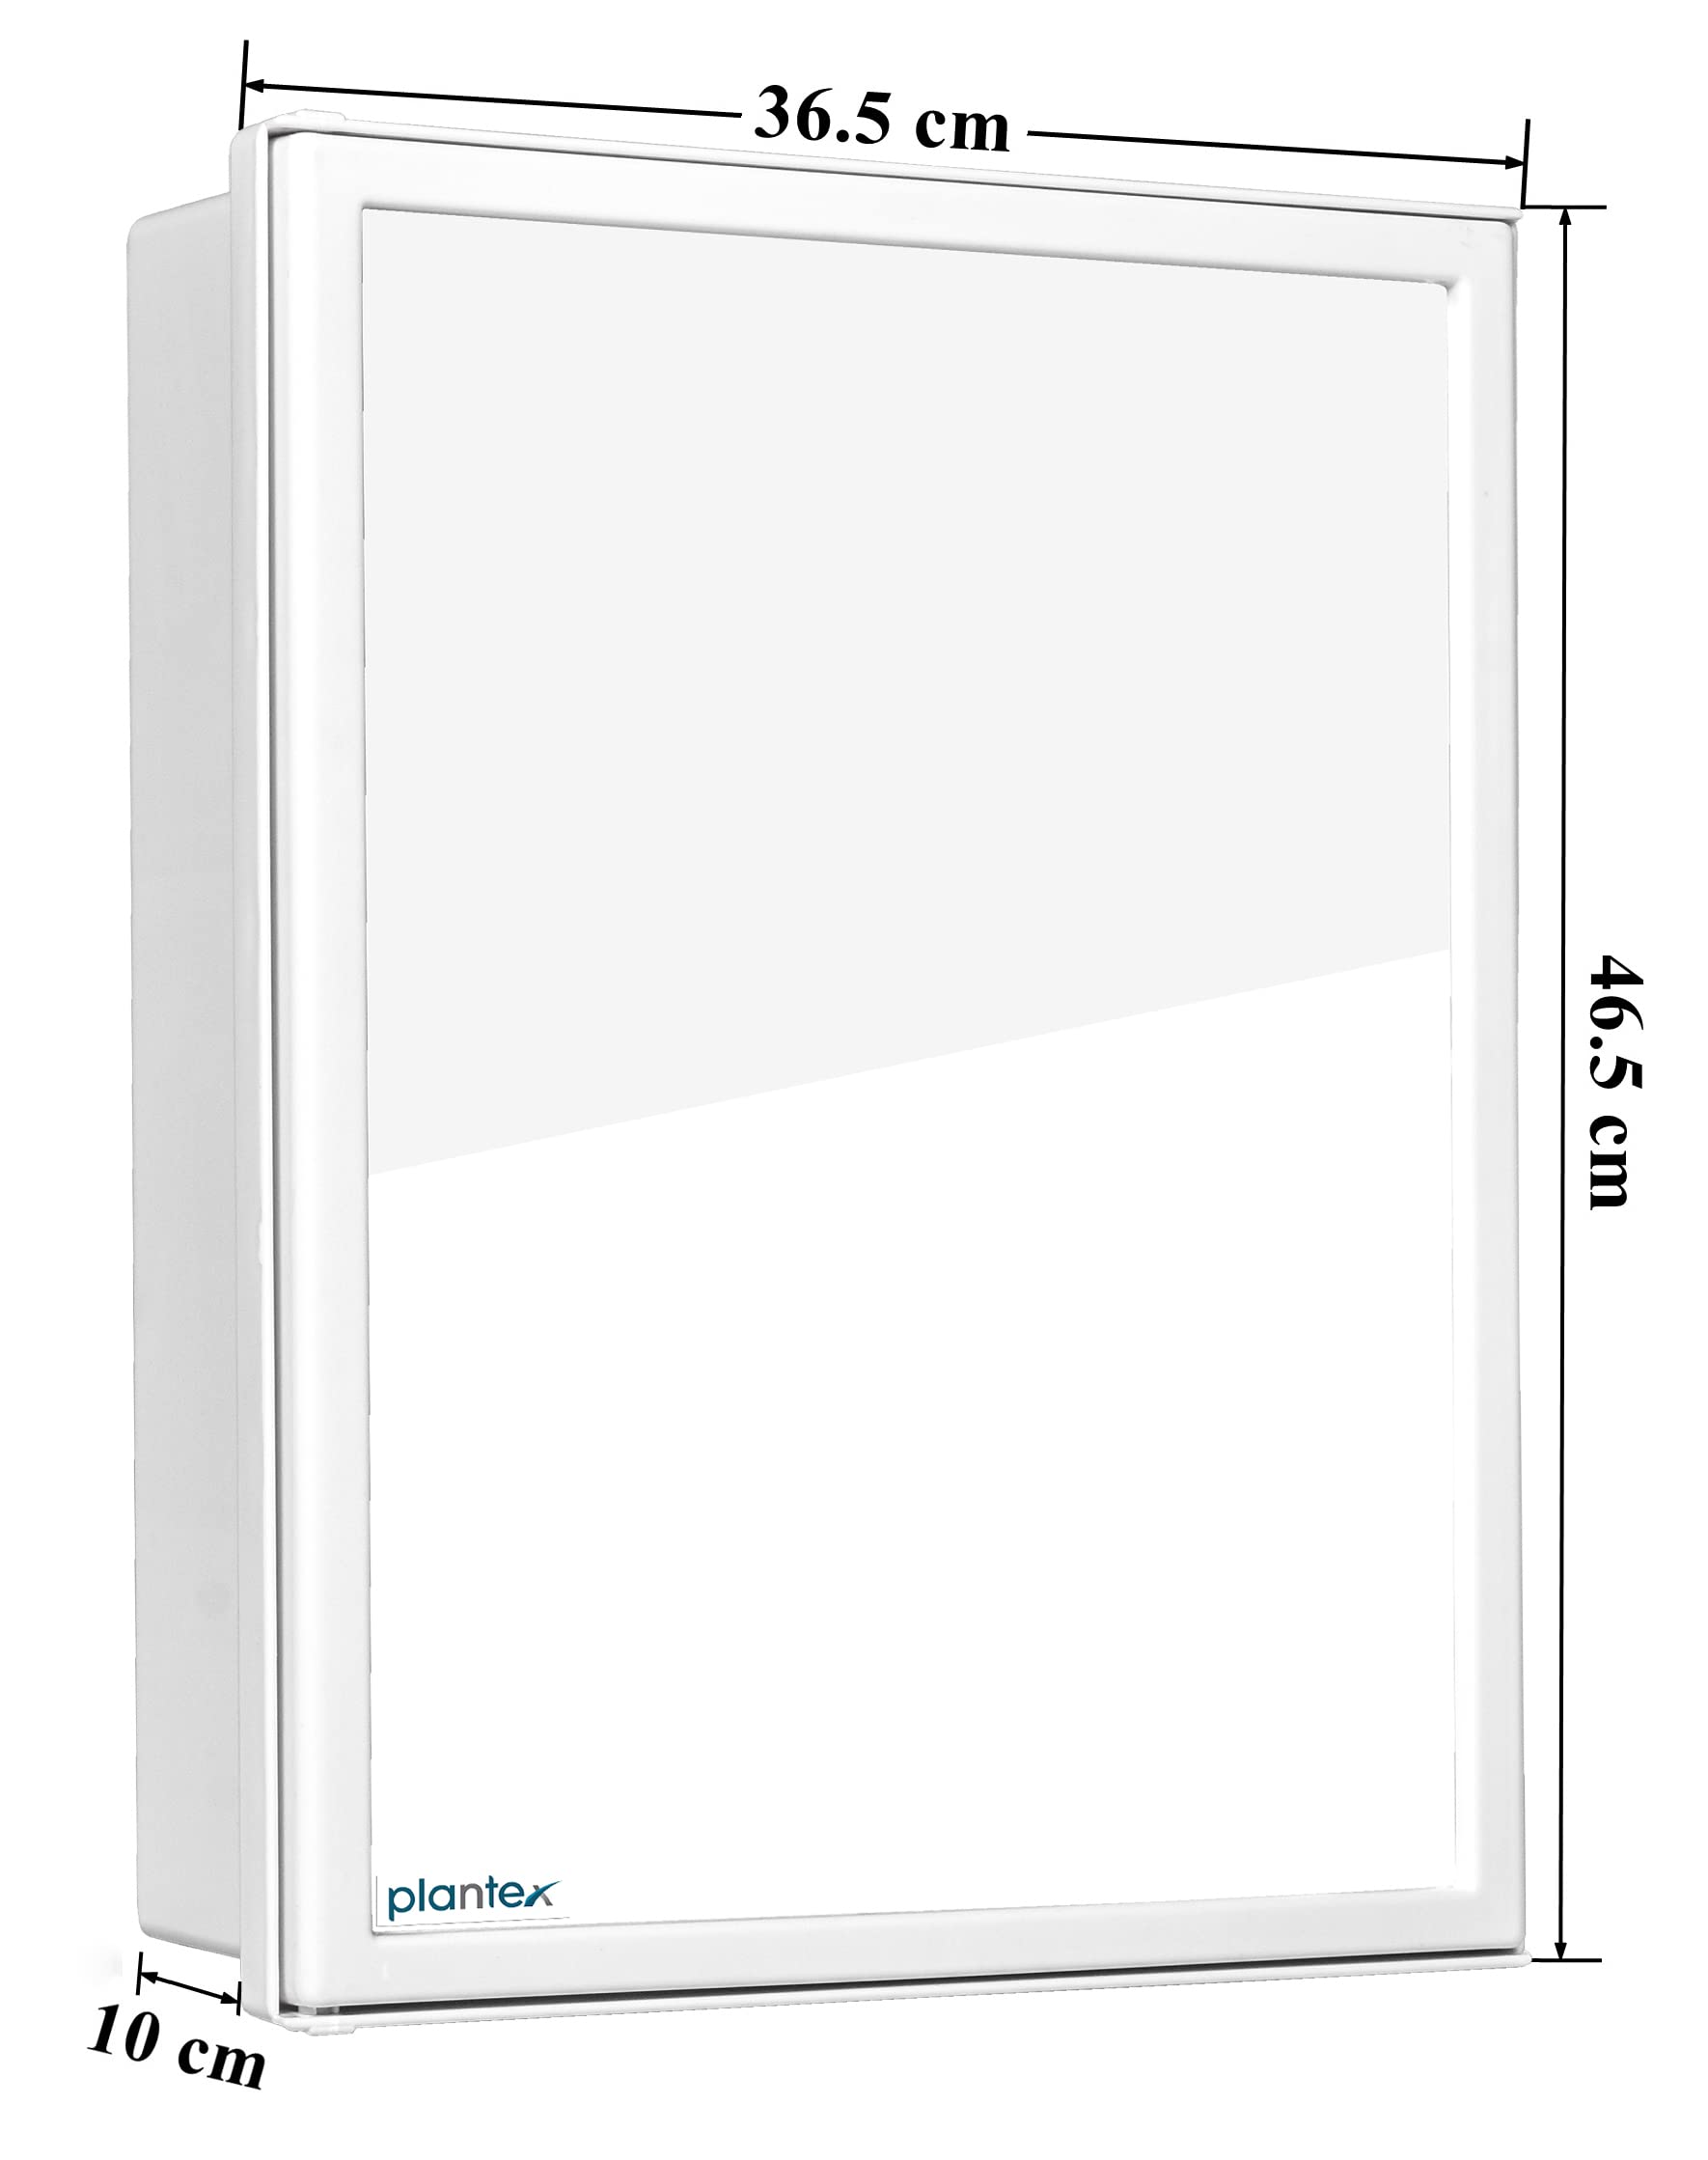 Plantex Heavy-Duty ABS Plastic Multi-Purpose Bathroom Cabinet with Mirror Door/Bathroom Accessories (White)